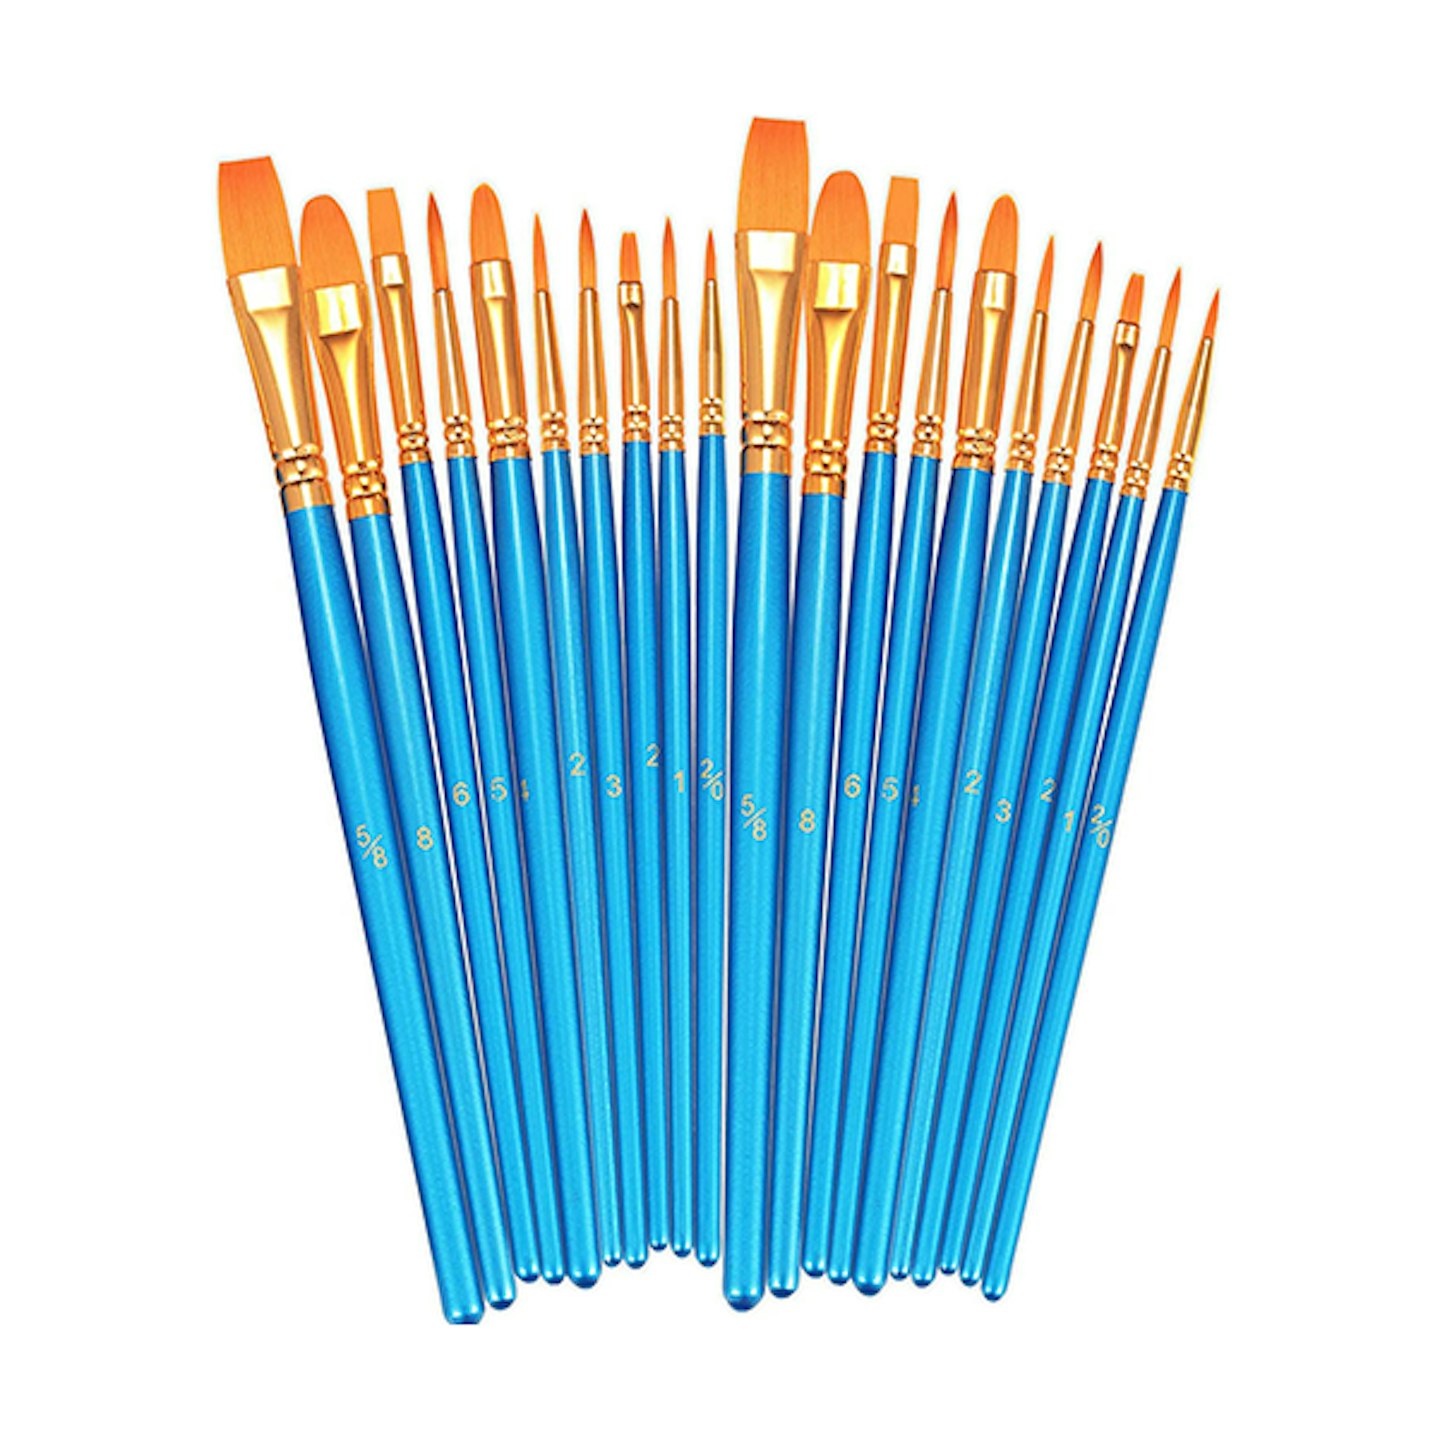 BOSOBO Paint Brushes Set, 2 Pack 20 Pcs Round Pointed Tip Paintbrushes Nylon Hair Artist Acrylic Paint Brushes